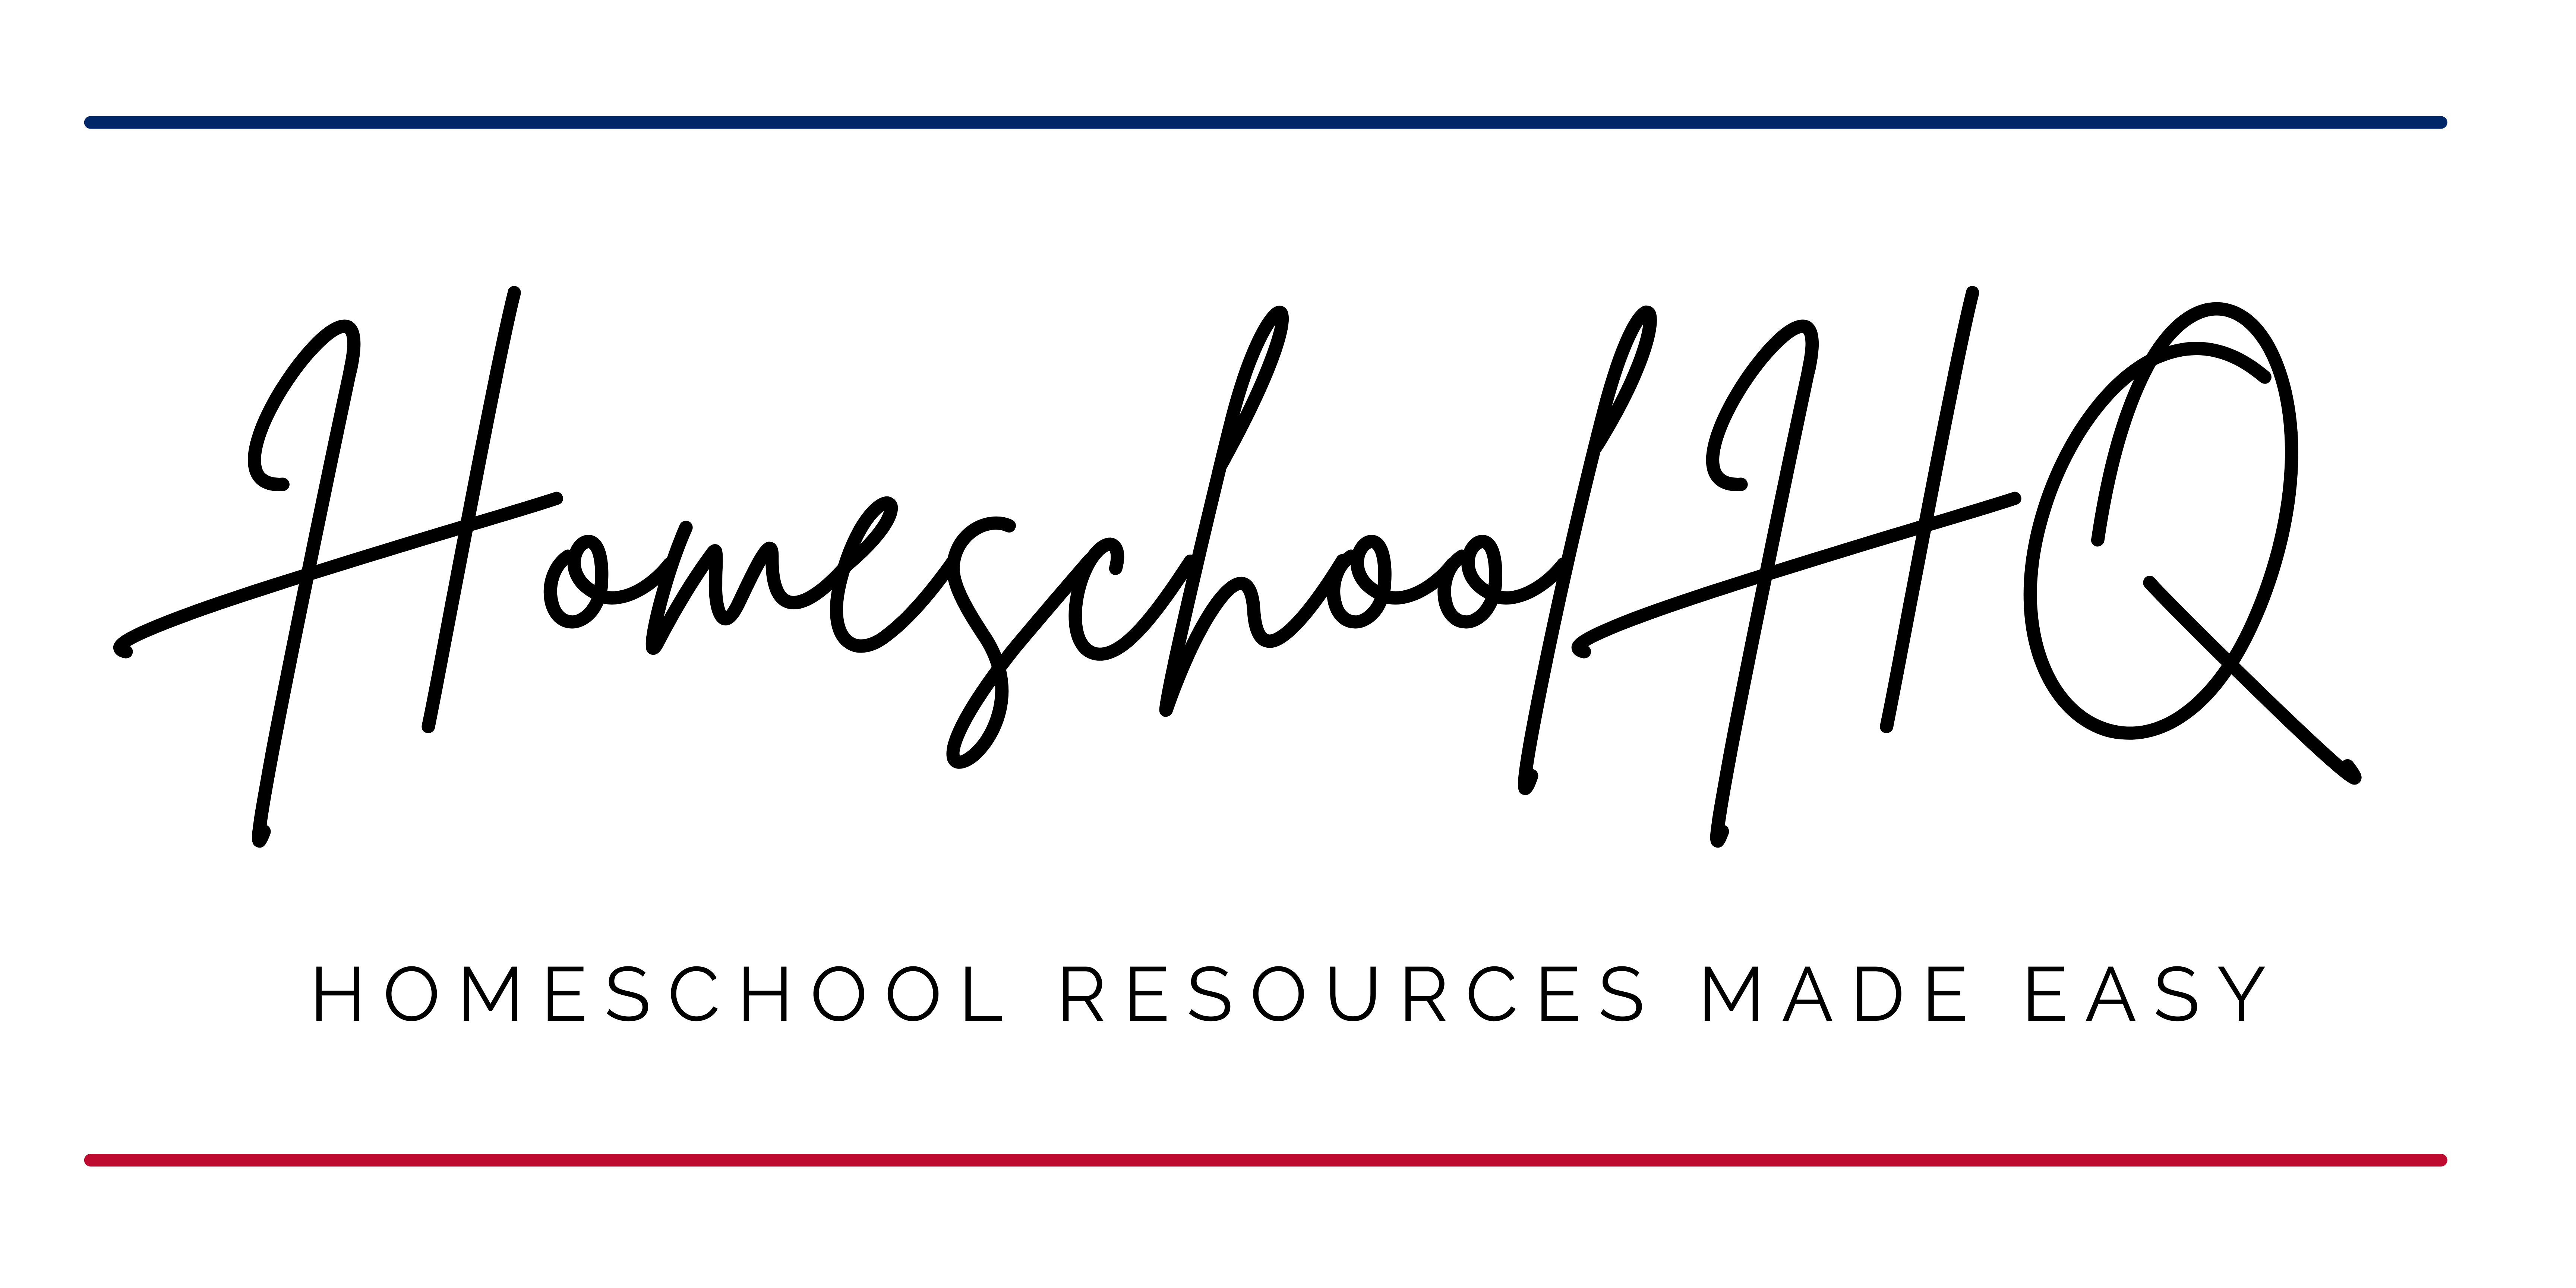 HomeschoolHQ LLC